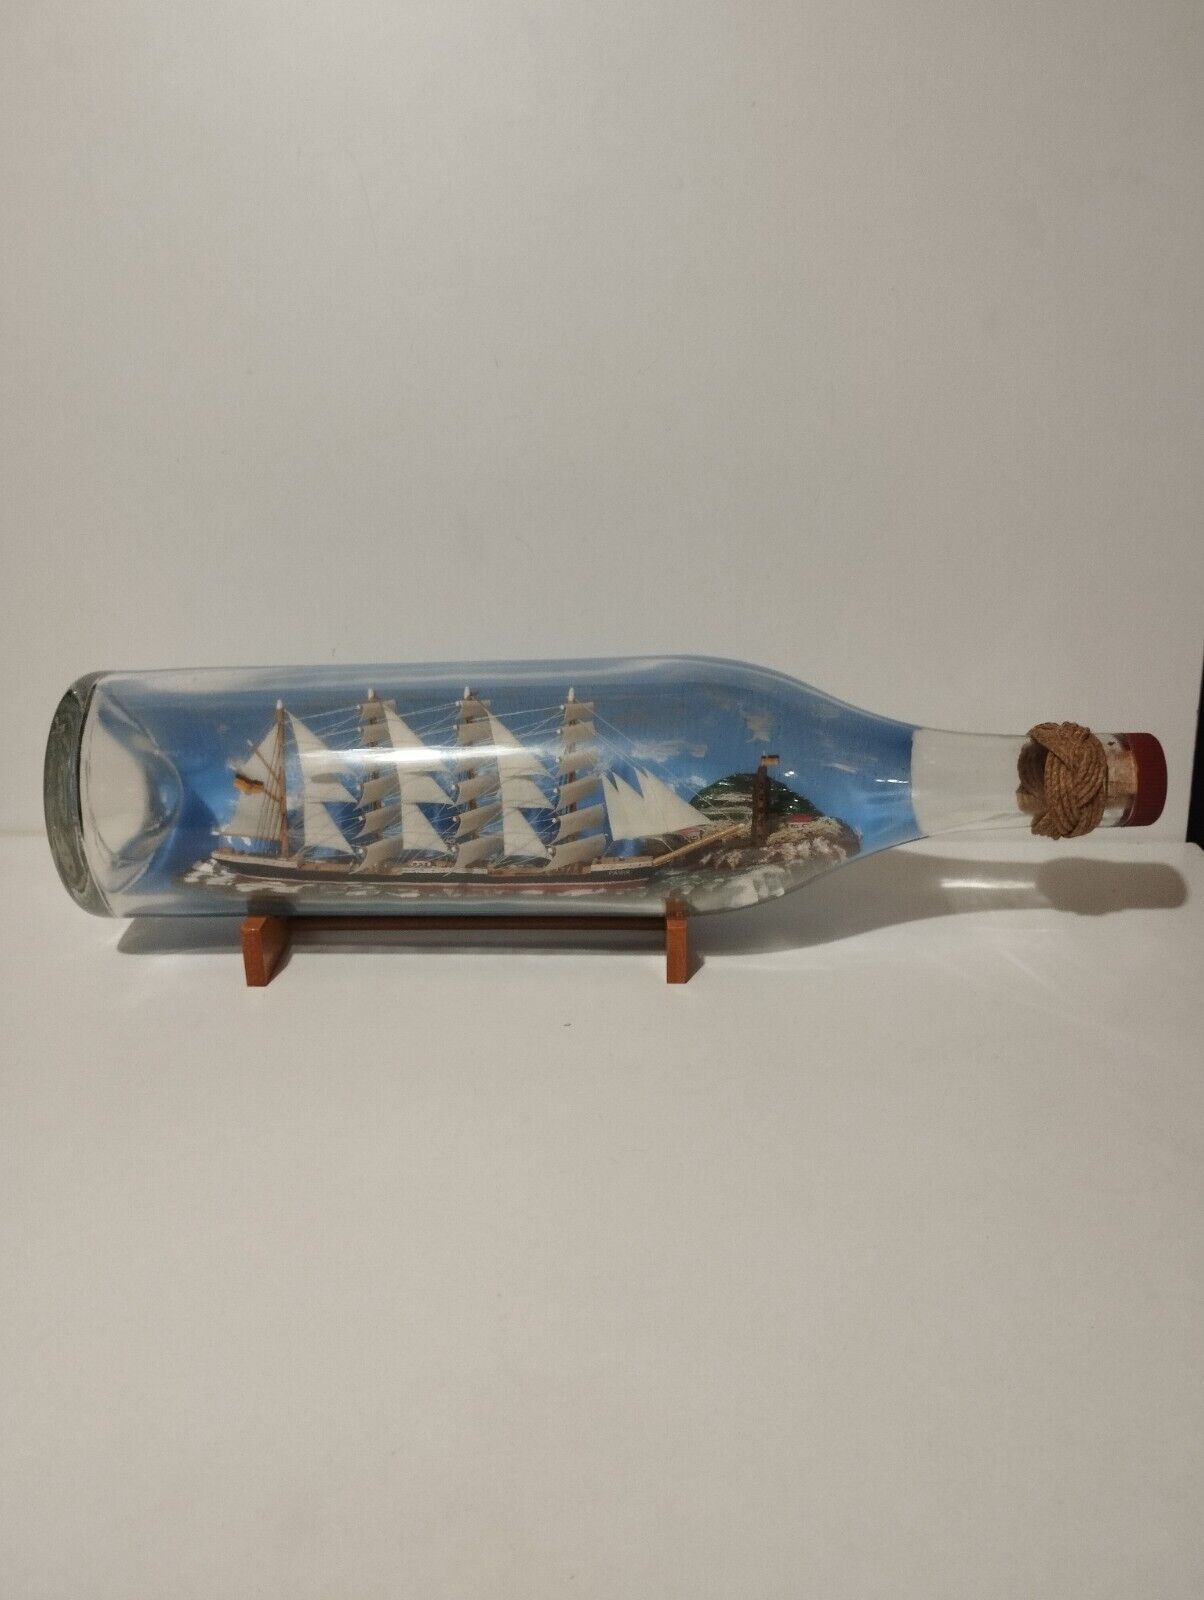 🟢Unique Rare Model Ship Pamir in a Bottle